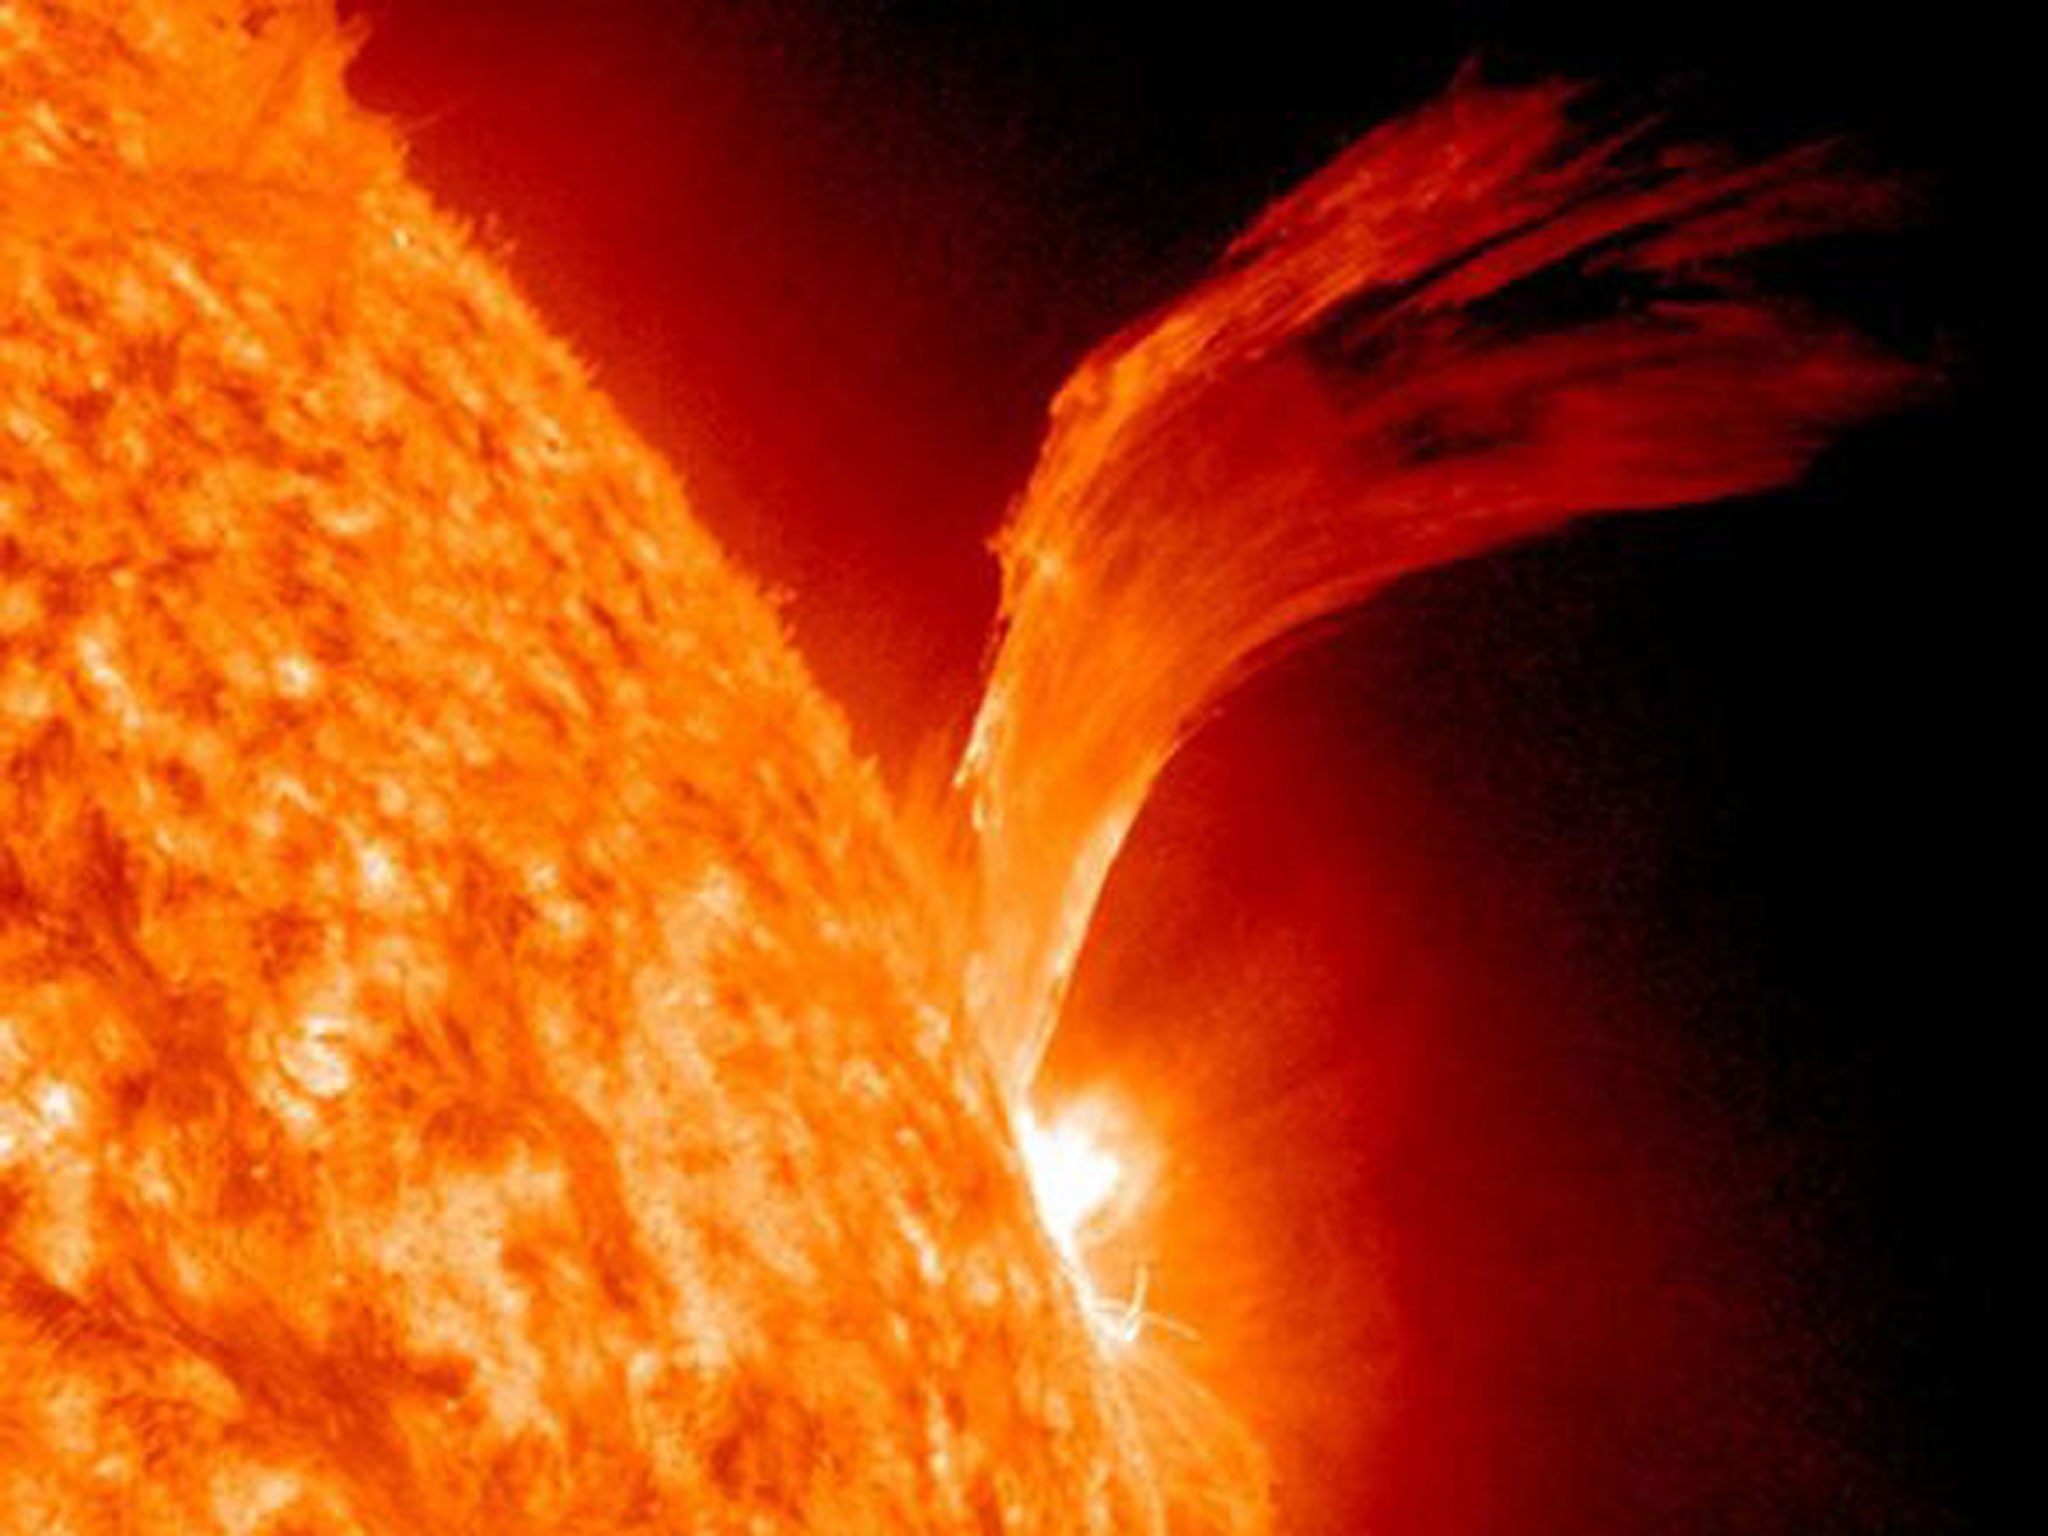 Las erupciones solares tienen la capacidad de crear súper tormentas que provocan apagones eléctricos